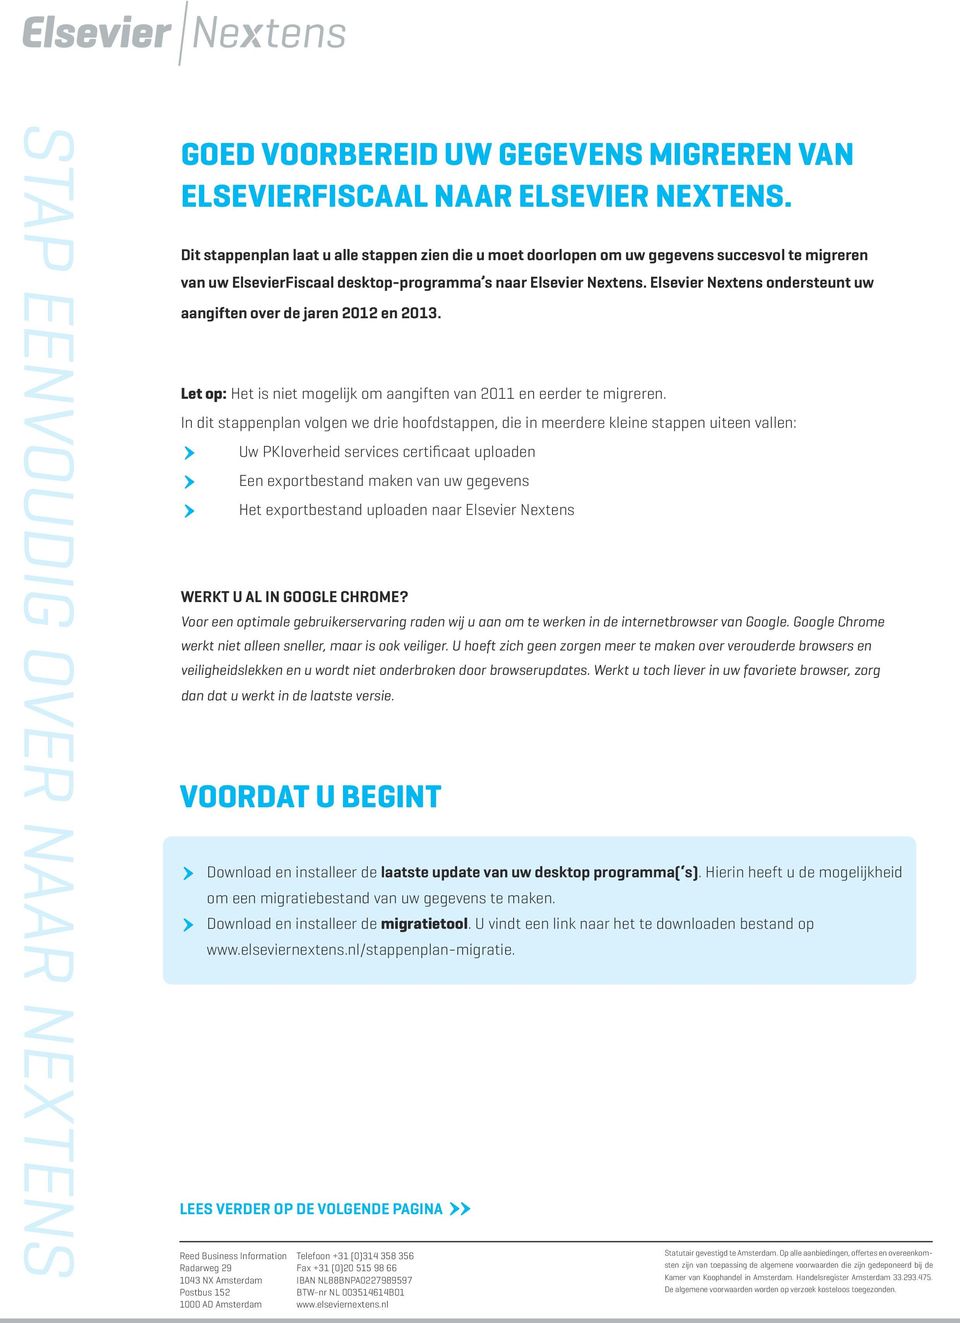 Elsevier Nextens ondersteunt uw aangiften over de jaren 2012 en 2013. Let op: Het is niet mogelijk om aangiften van 2011 en eerder te migreren.